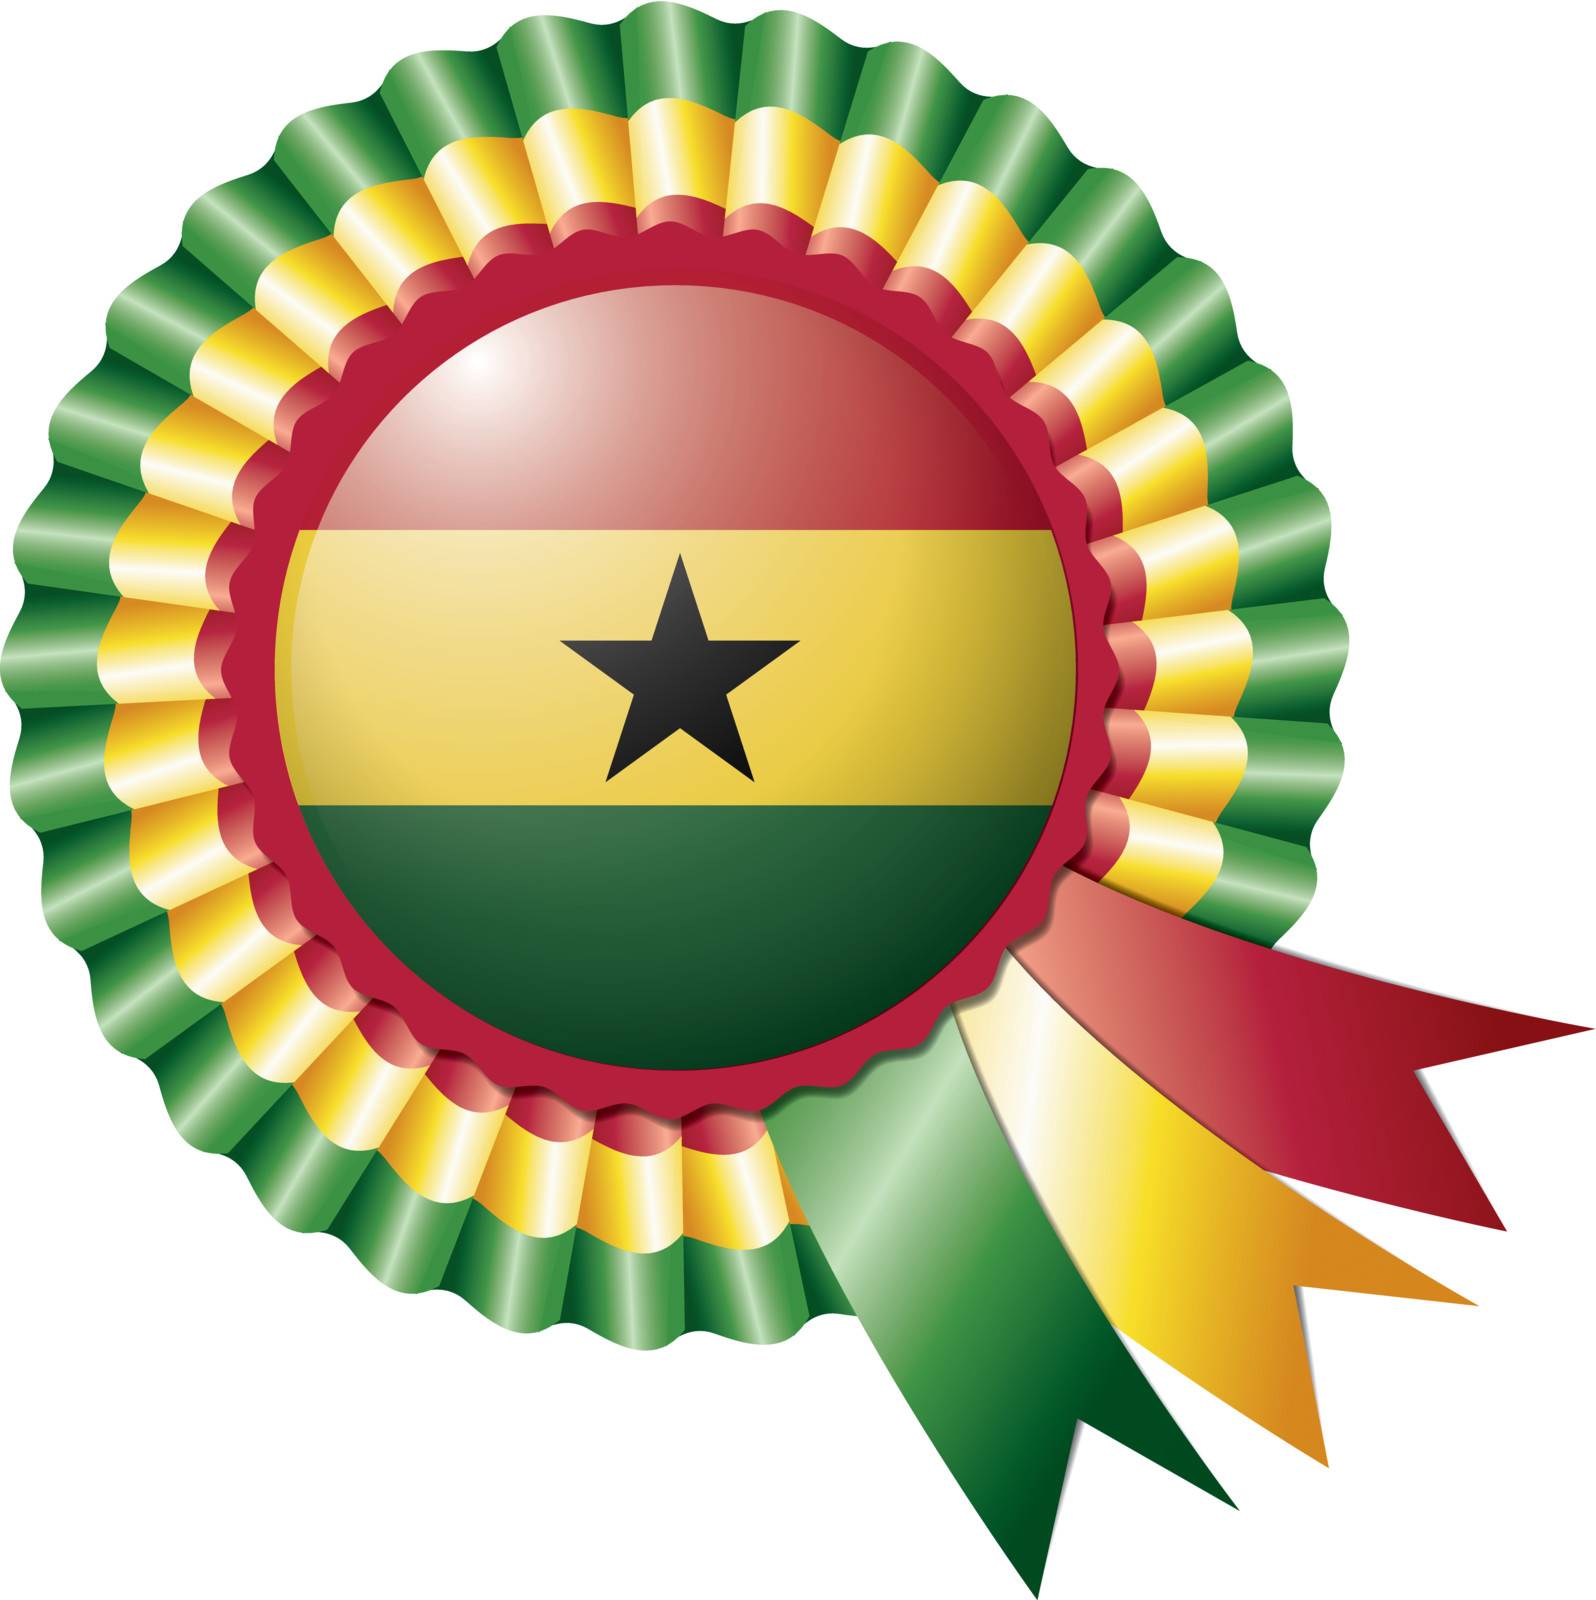 Ghana detailed silk rosette flag, eps10 vector illustration